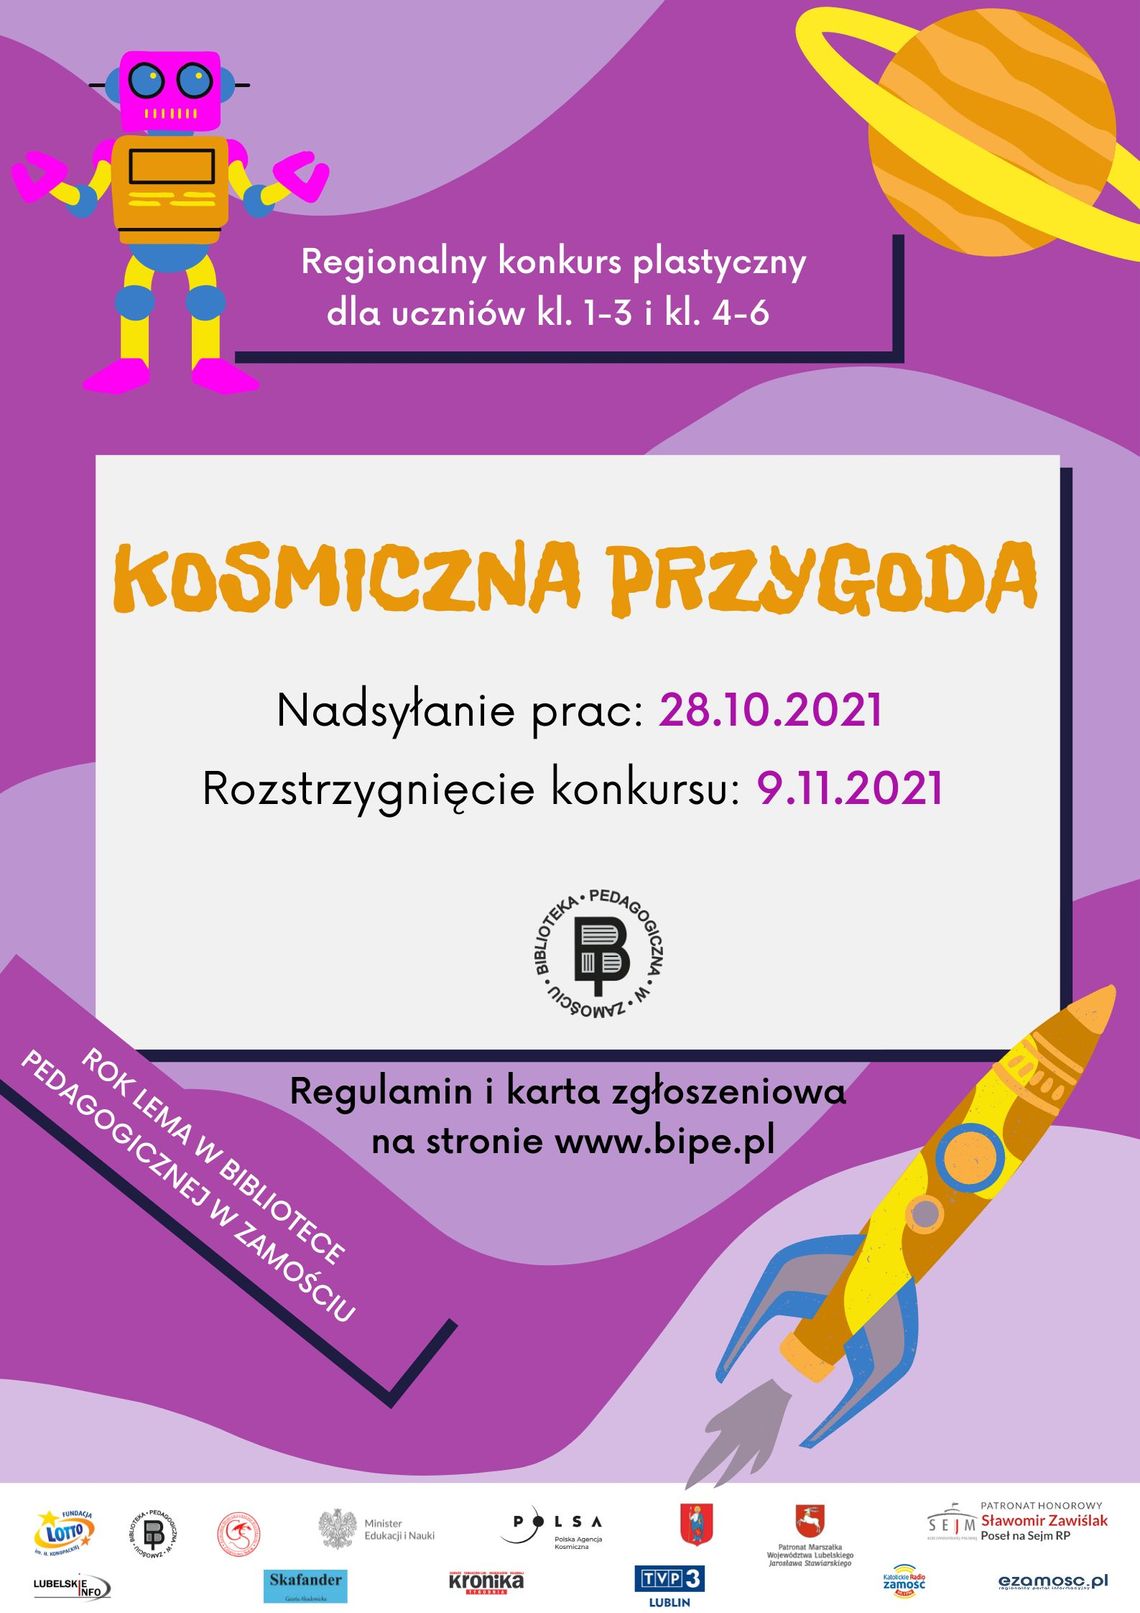 KOSMICZNA PRZYGODA - regionalny konkurs plastyczny